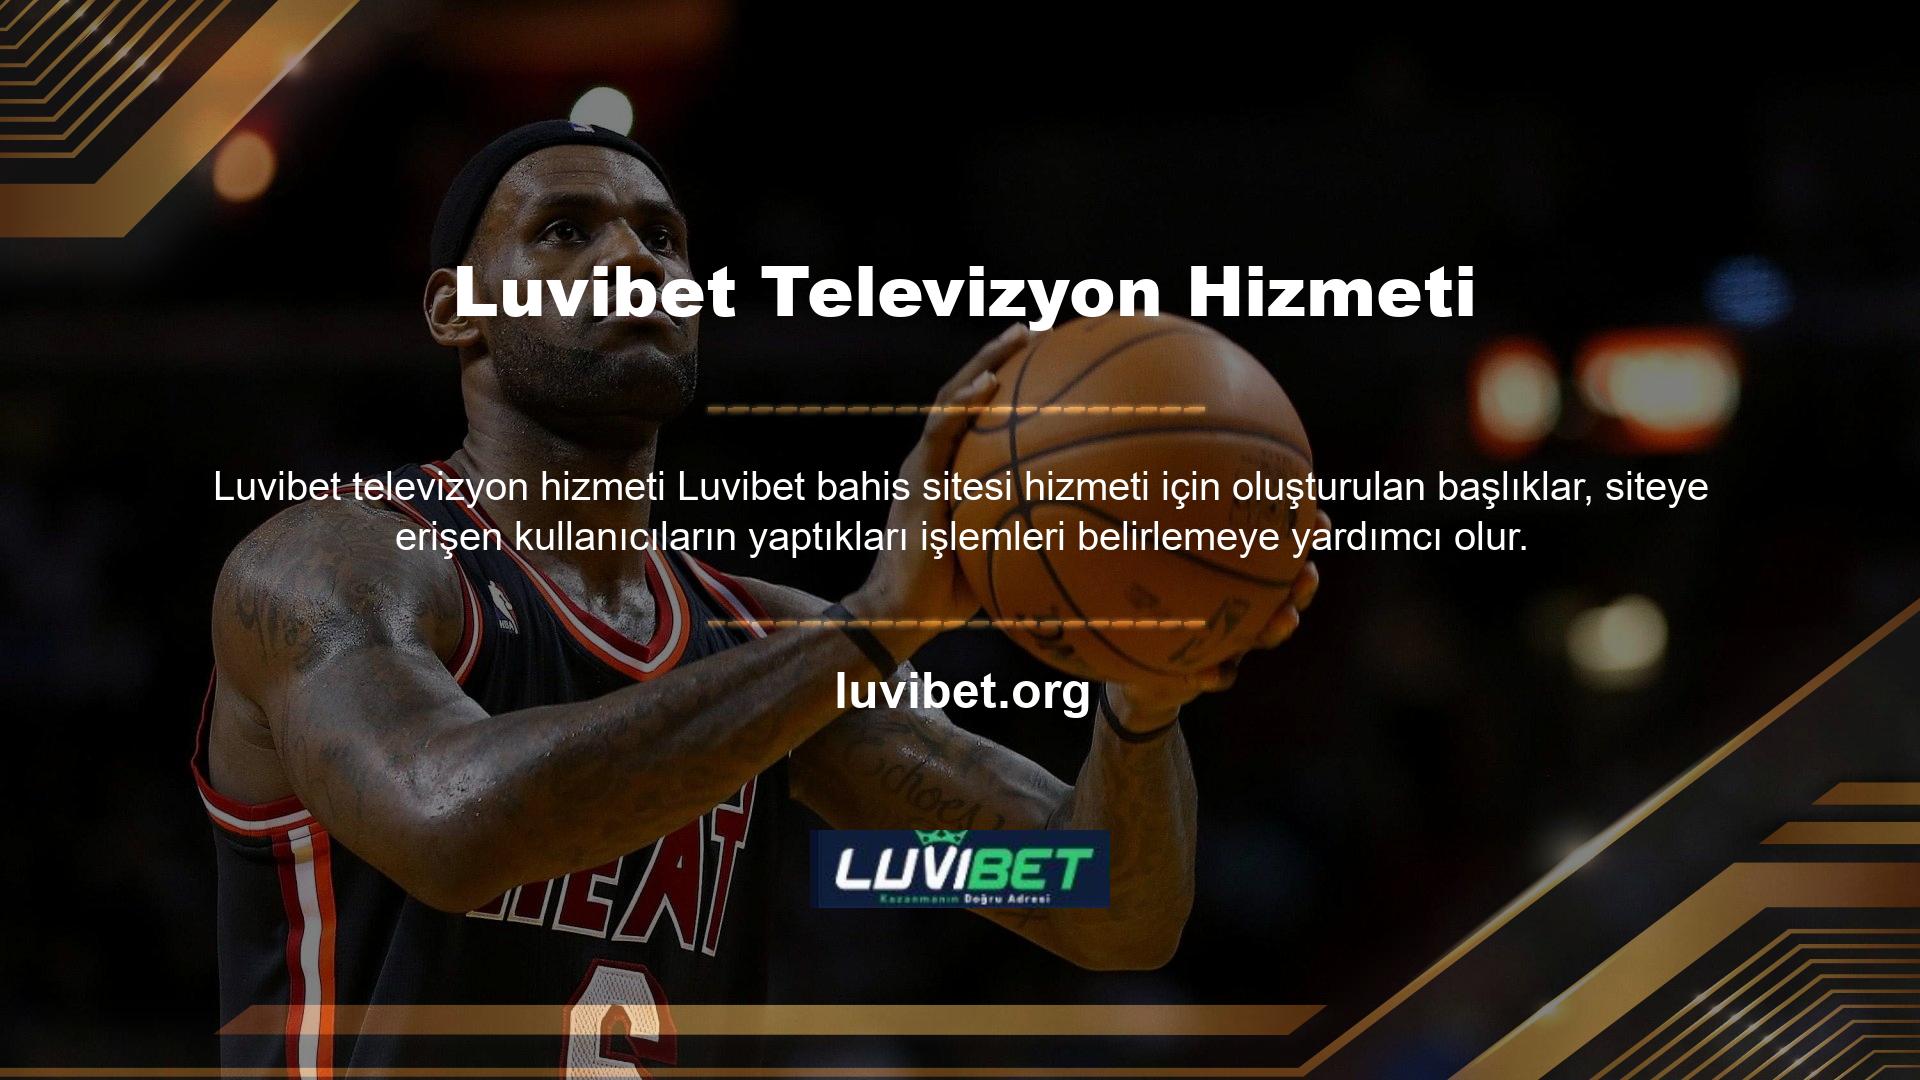 Luvibet TV bölümleri görsel TV ikonları ile kullanıcılara sunulmaktadır